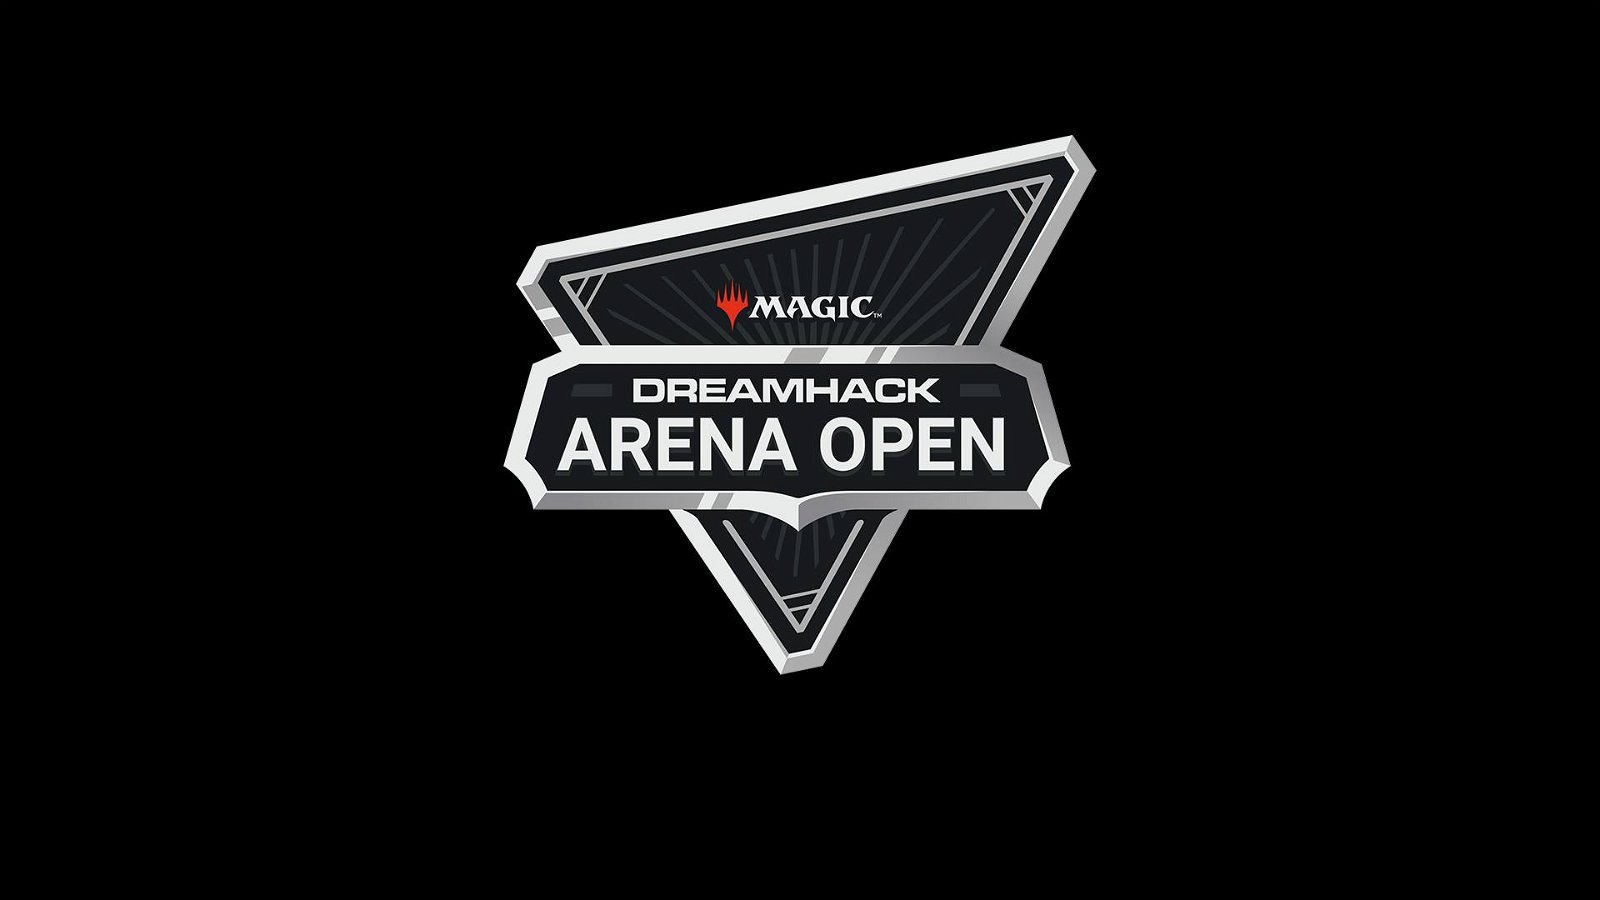 Immagine di Magic Arena approda alla Dreamhack Arena Open